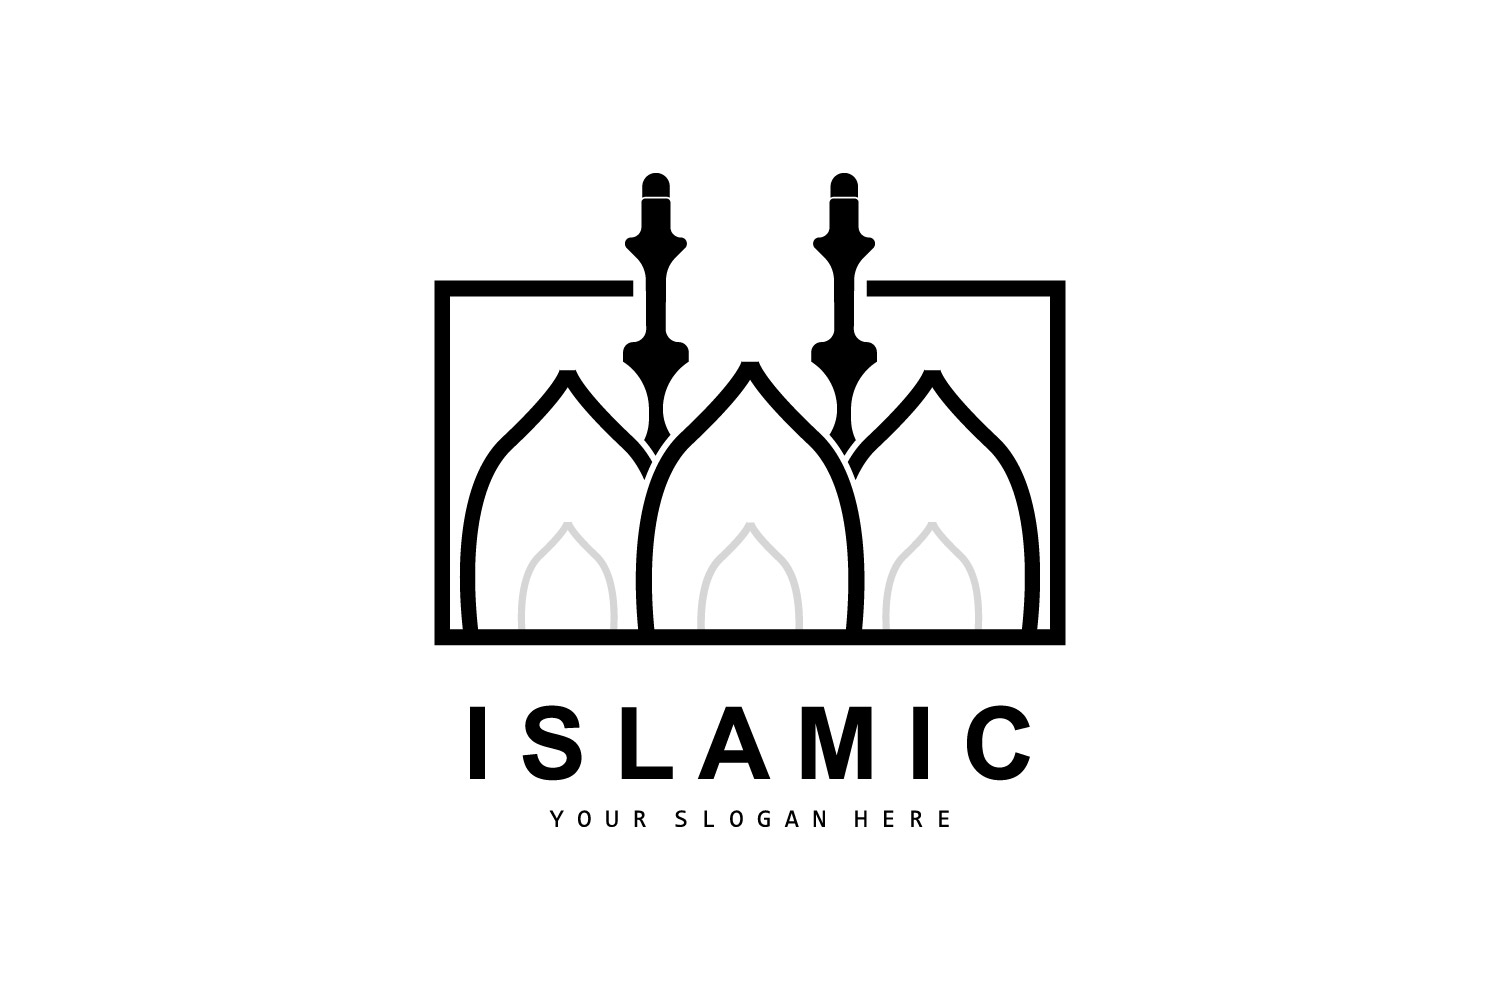 Mosque logo ramadan design template vectorV7